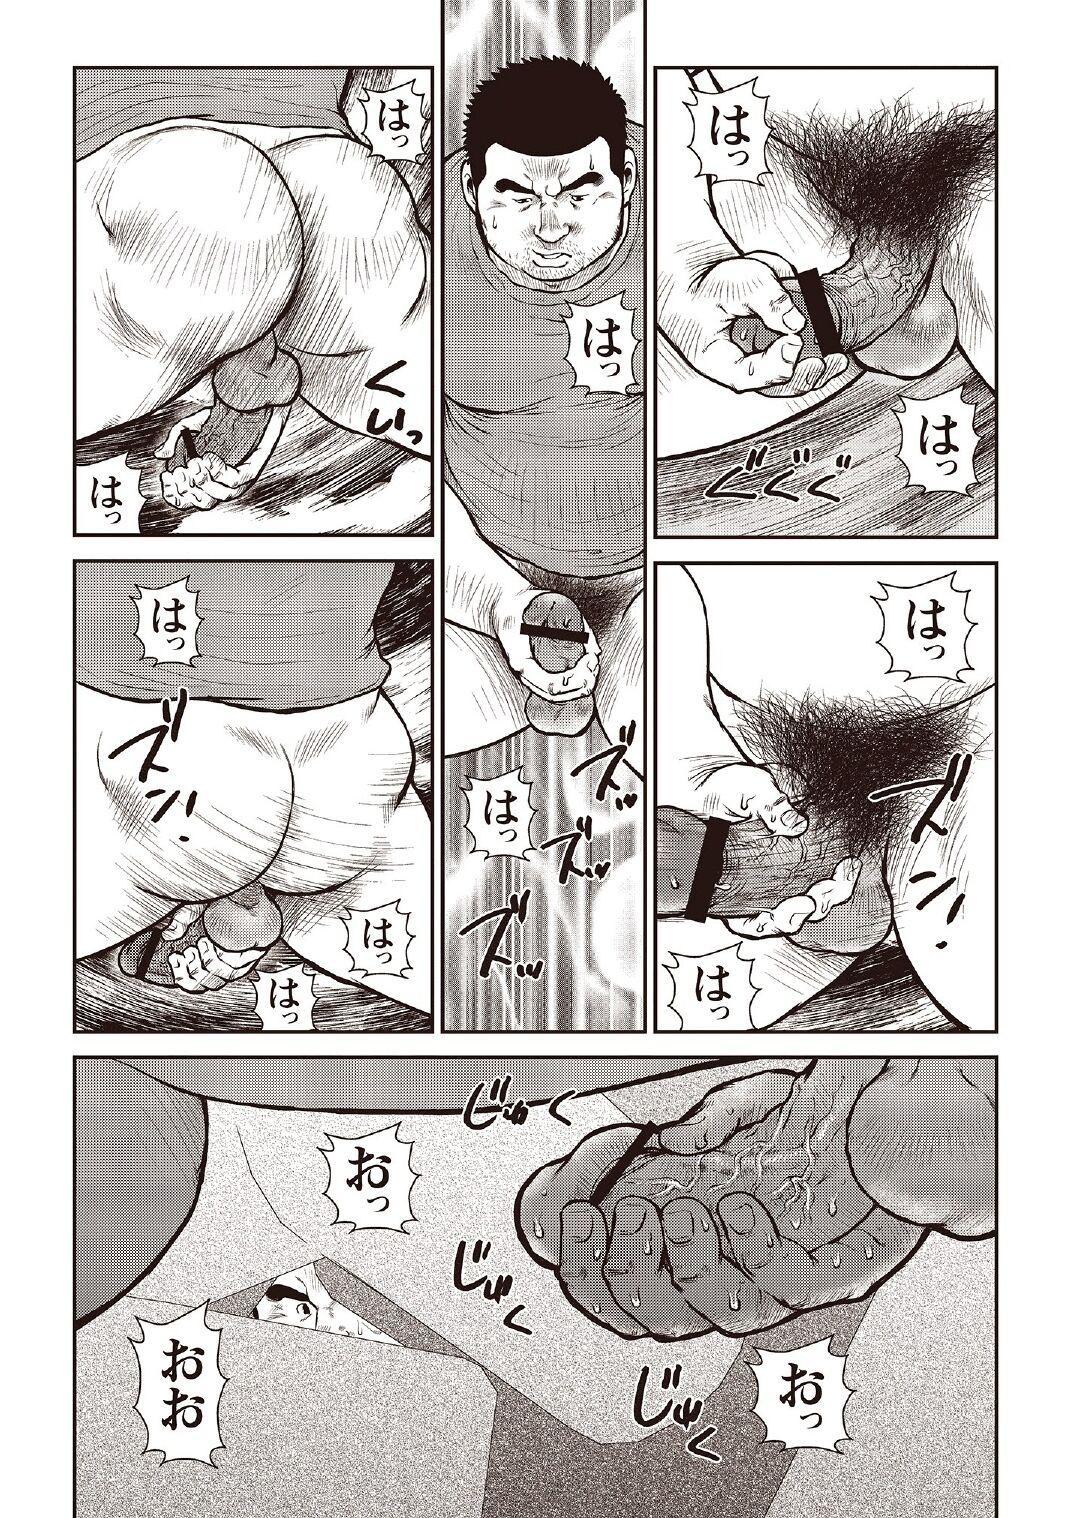 [Ebisubashi Seizou] Ebisubashi Seizou Tanpen Manga Shuu 2 Fuuun! Danshi Ryou [Bunsatsuban] PART 2 Bousou Hantou Taifuu Zensen Ch. 1 + Ch. 2 [Digital] 18